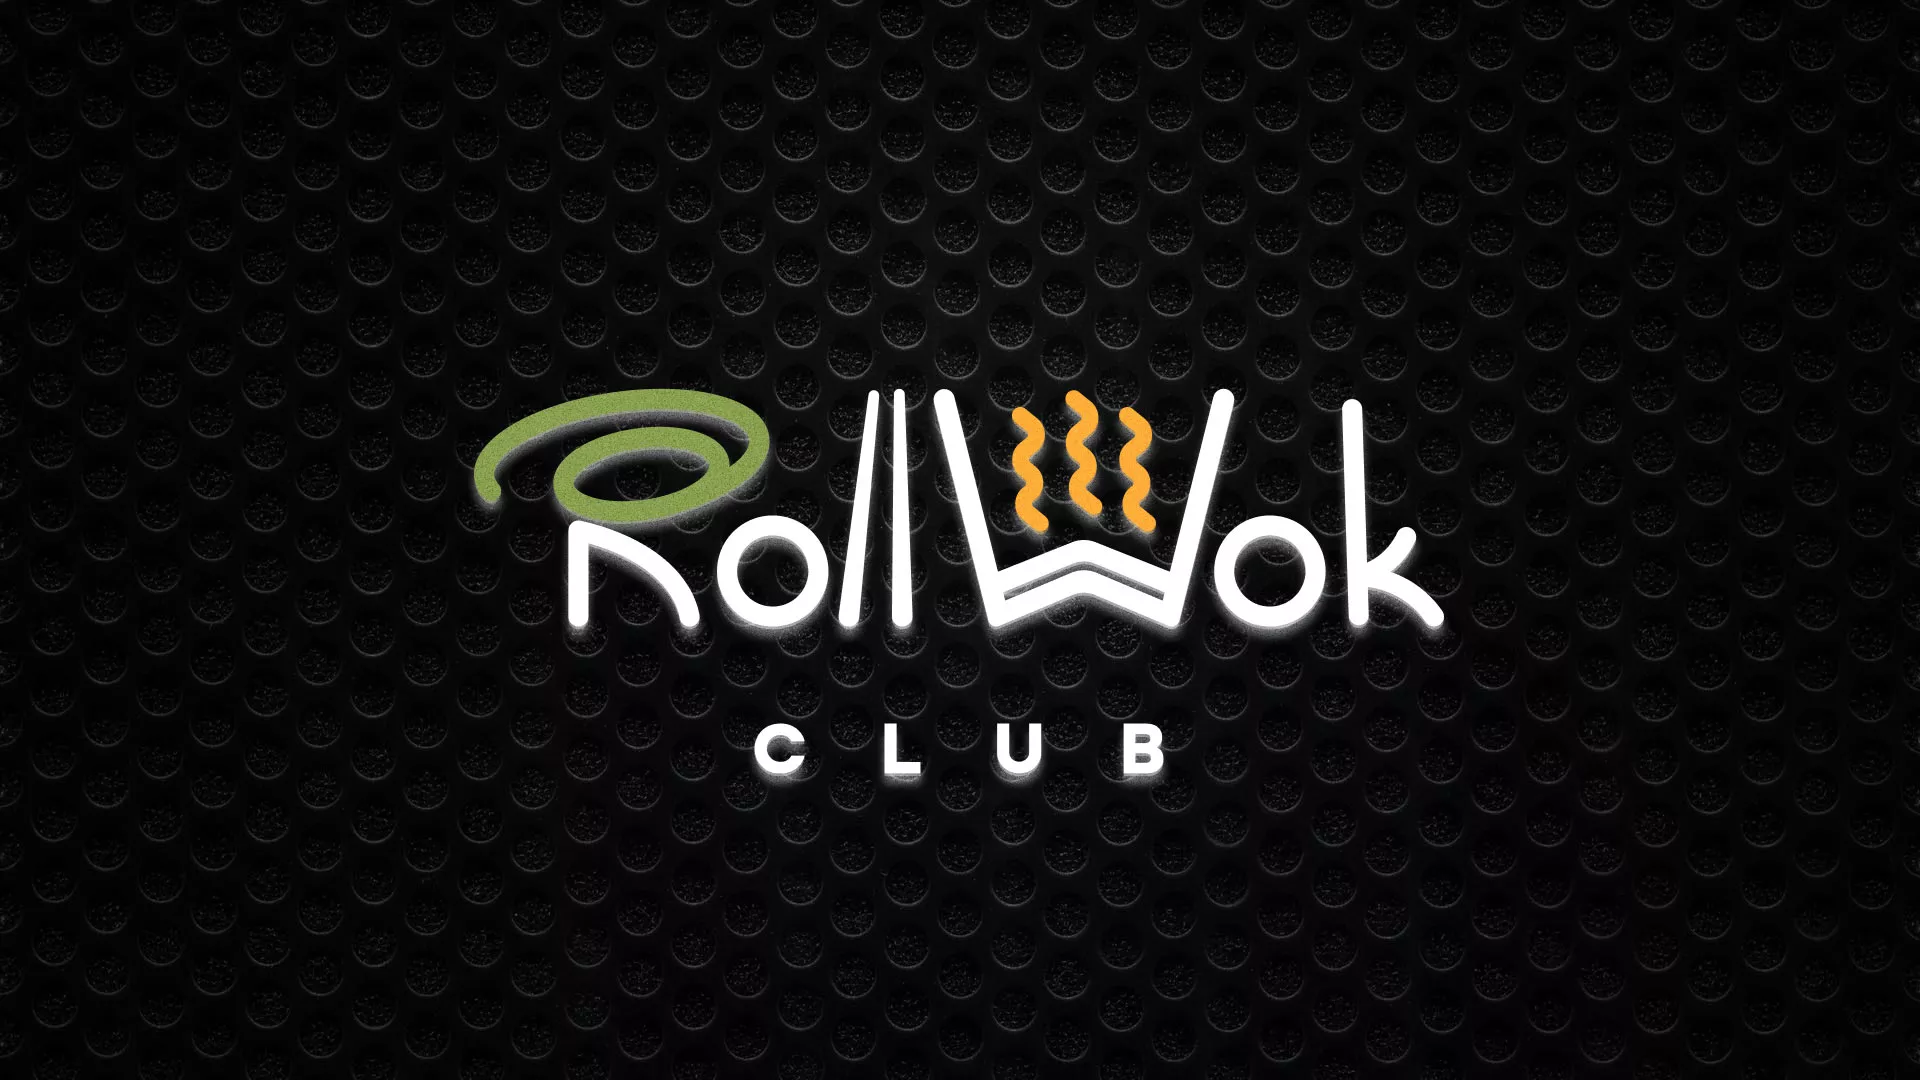 Брендирование торговых точек суши-бара «Roll Wok Club» в Белой Калитве